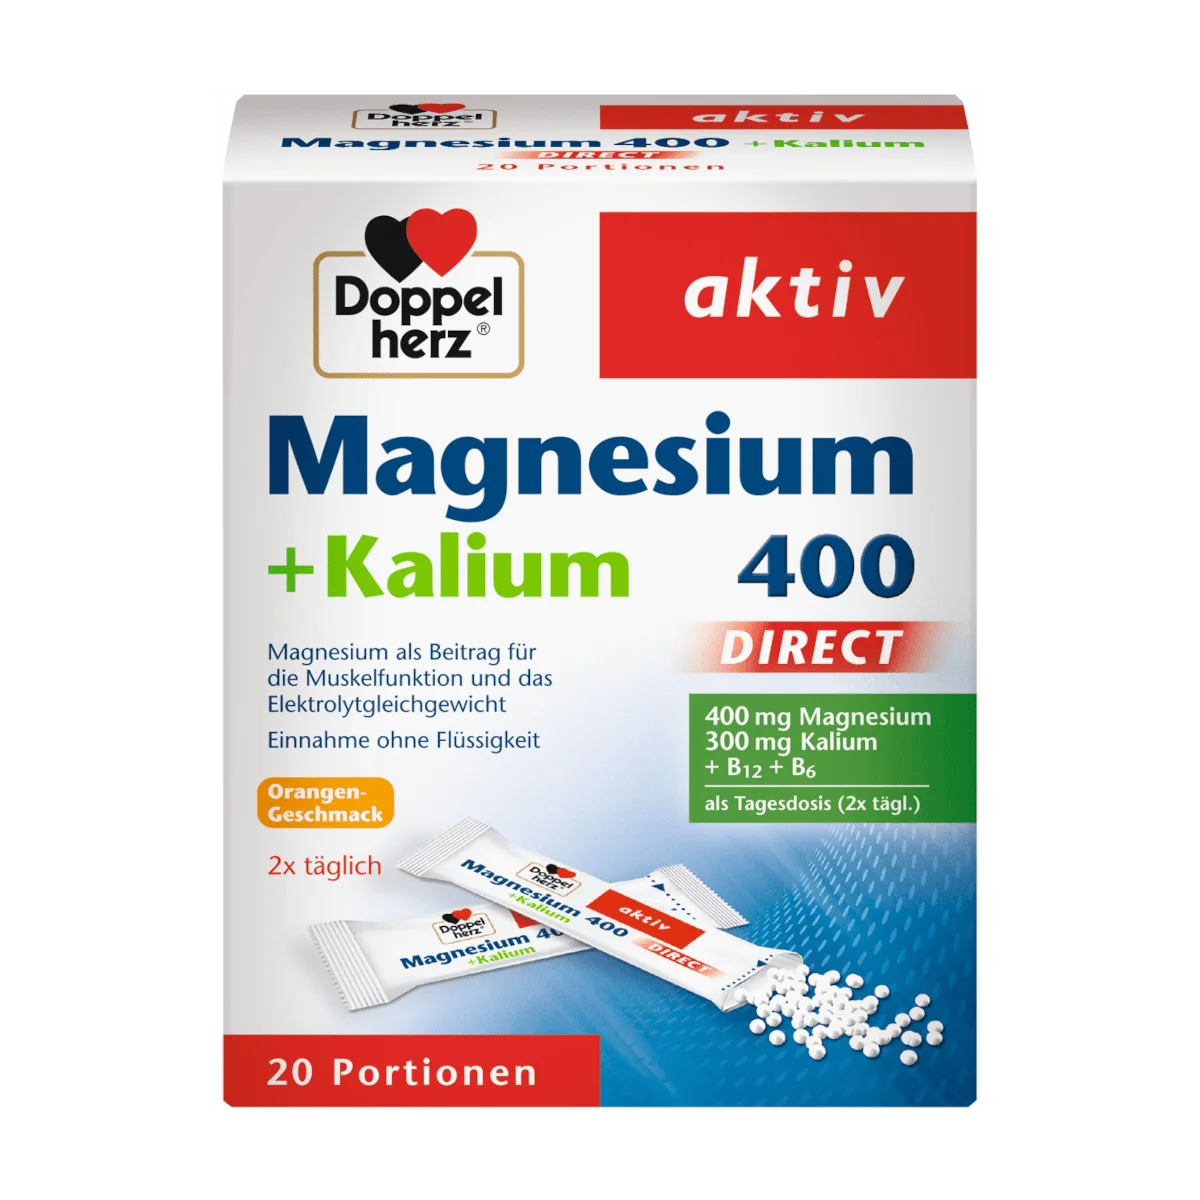 Doppelherz Magnesium 400 + Kalium direct, 20 Port